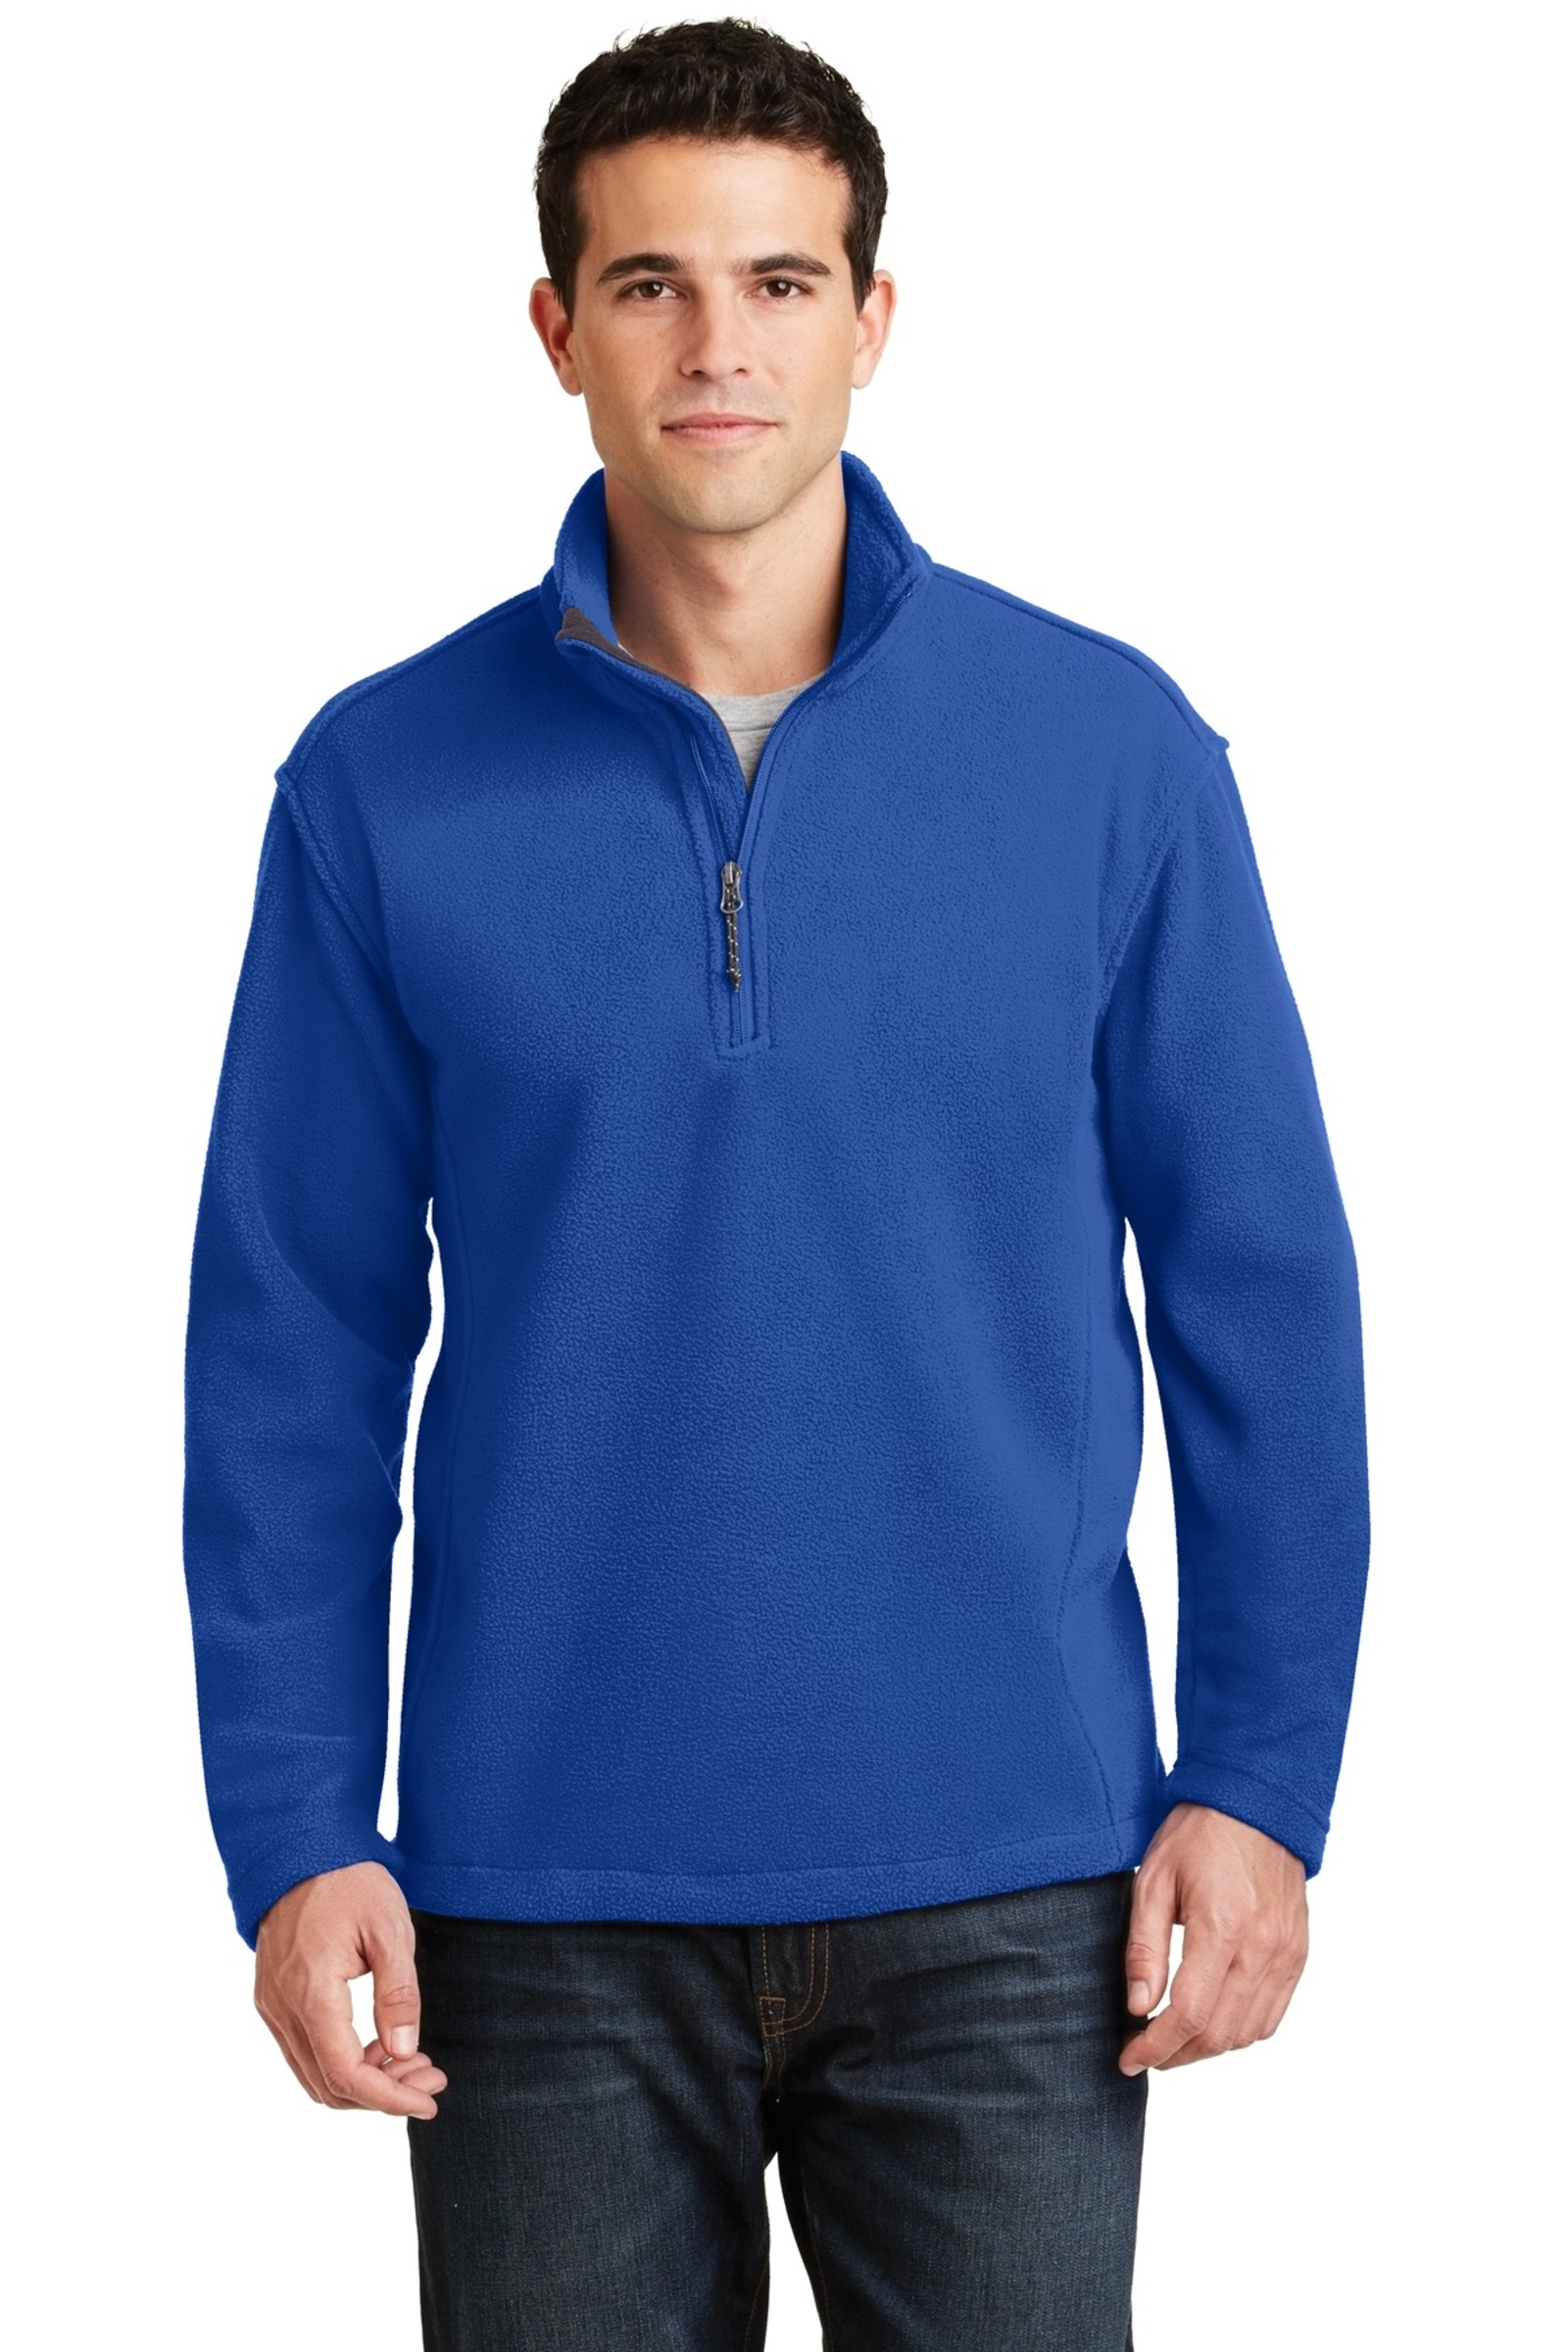 Port Authority Embroidered Men's Value Fleece 1/4-Zip Pullover | Fleece ...